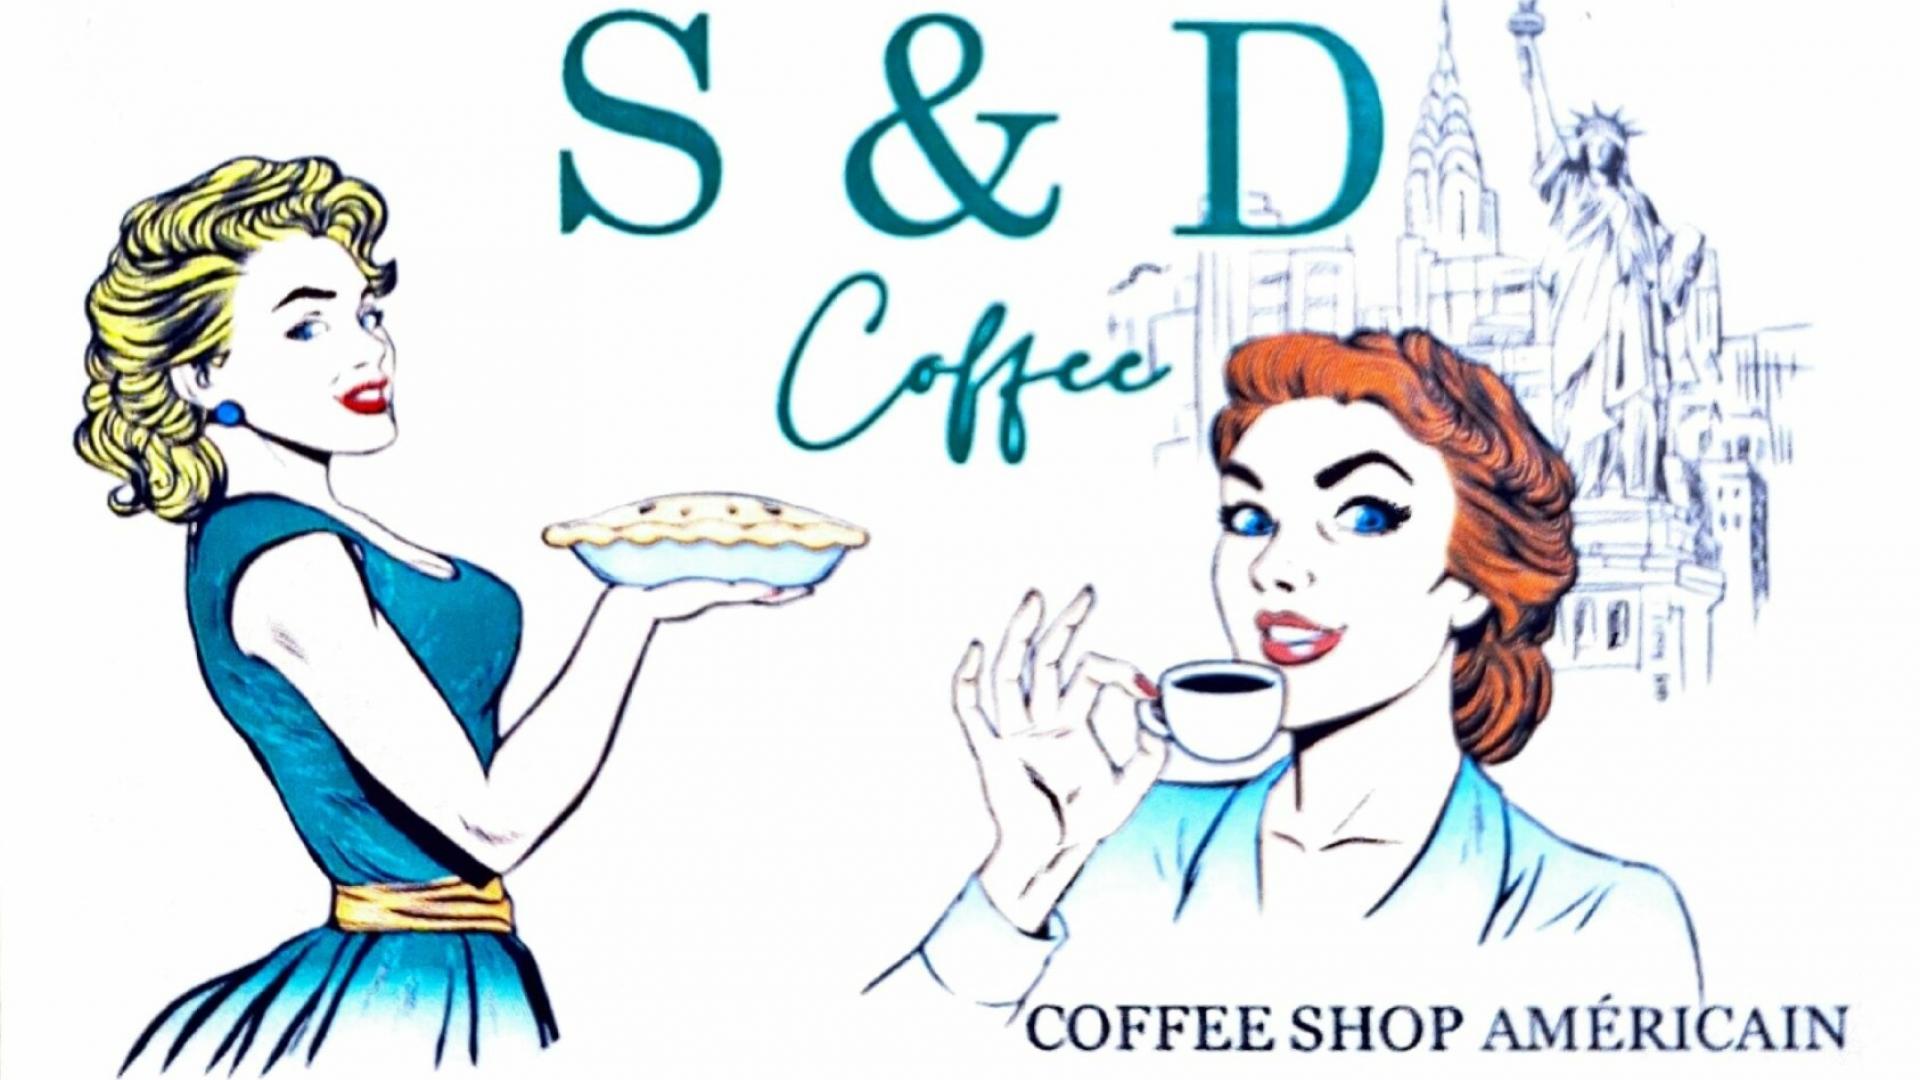 S & D COFFEE - COFFEE SHOP AMERICAIN